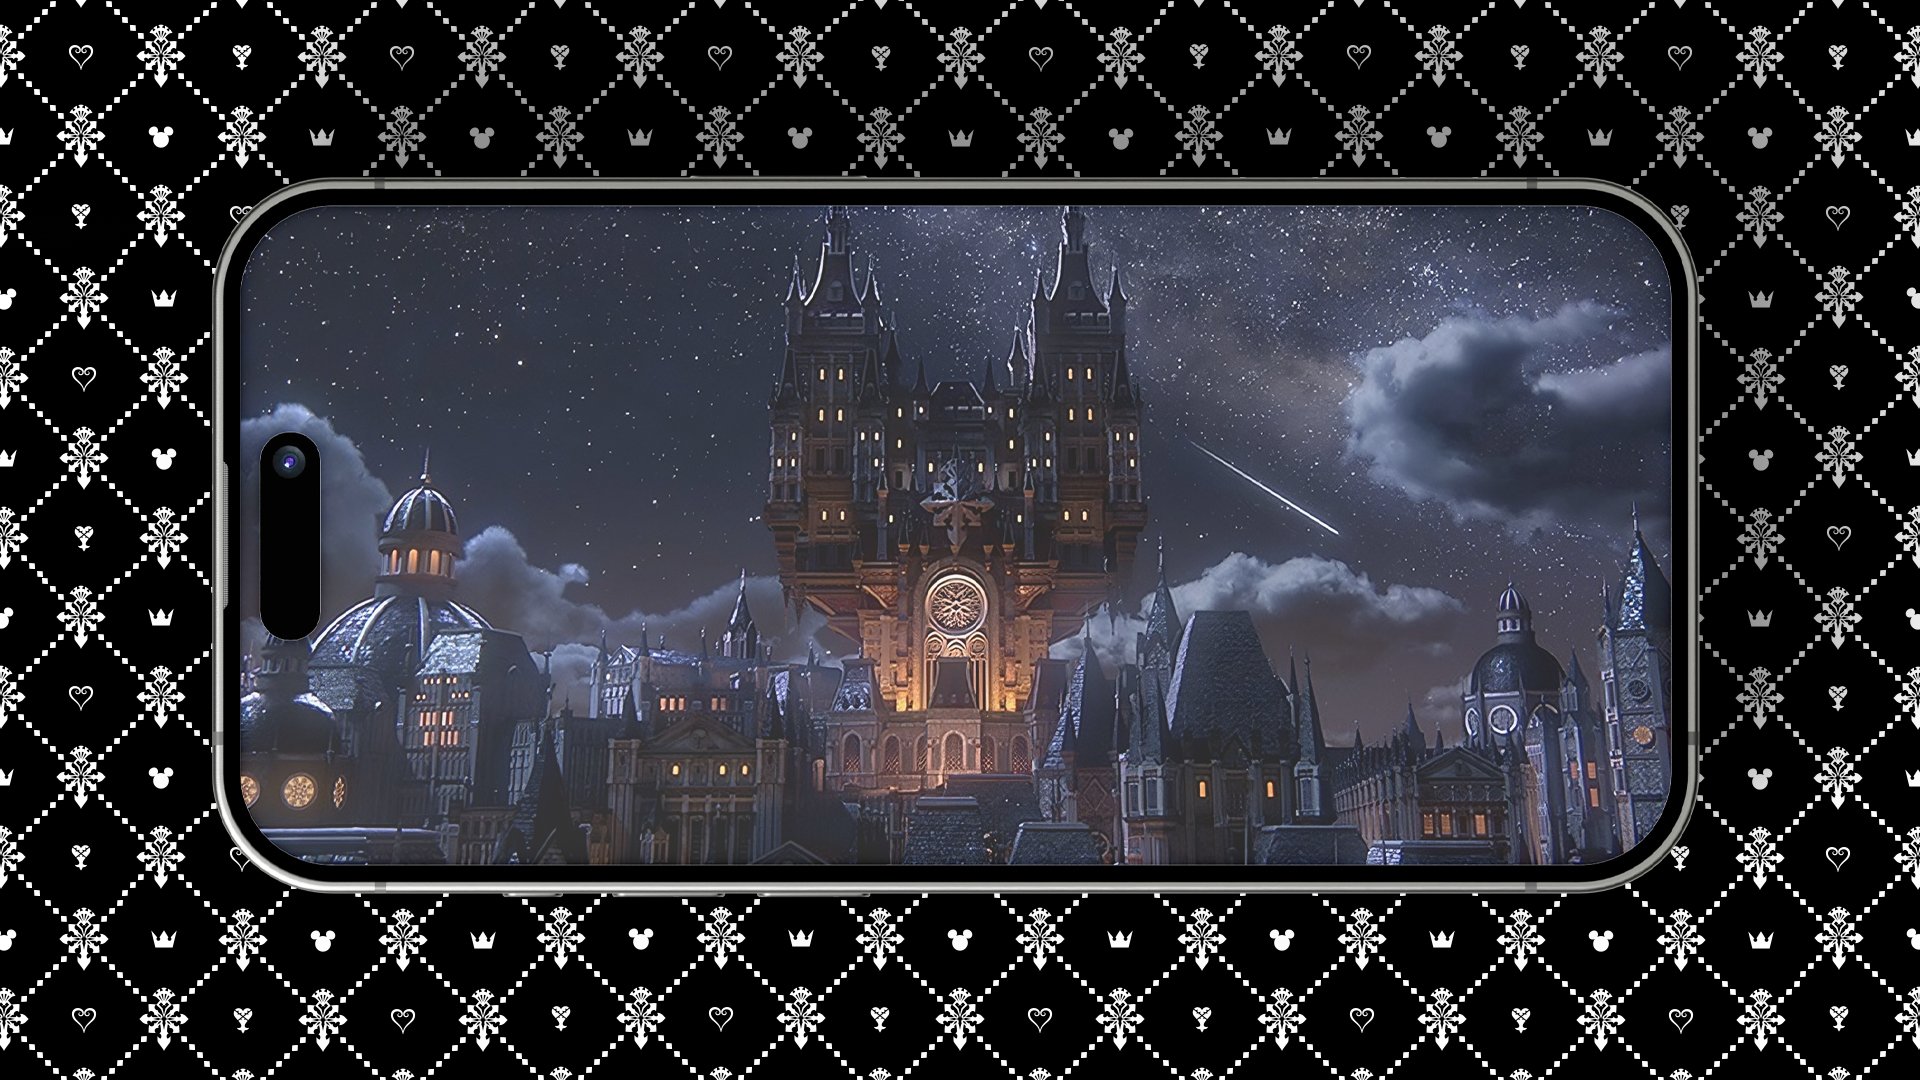 Kingdom Hearts Missing-Link - Official Teaser Trailer 